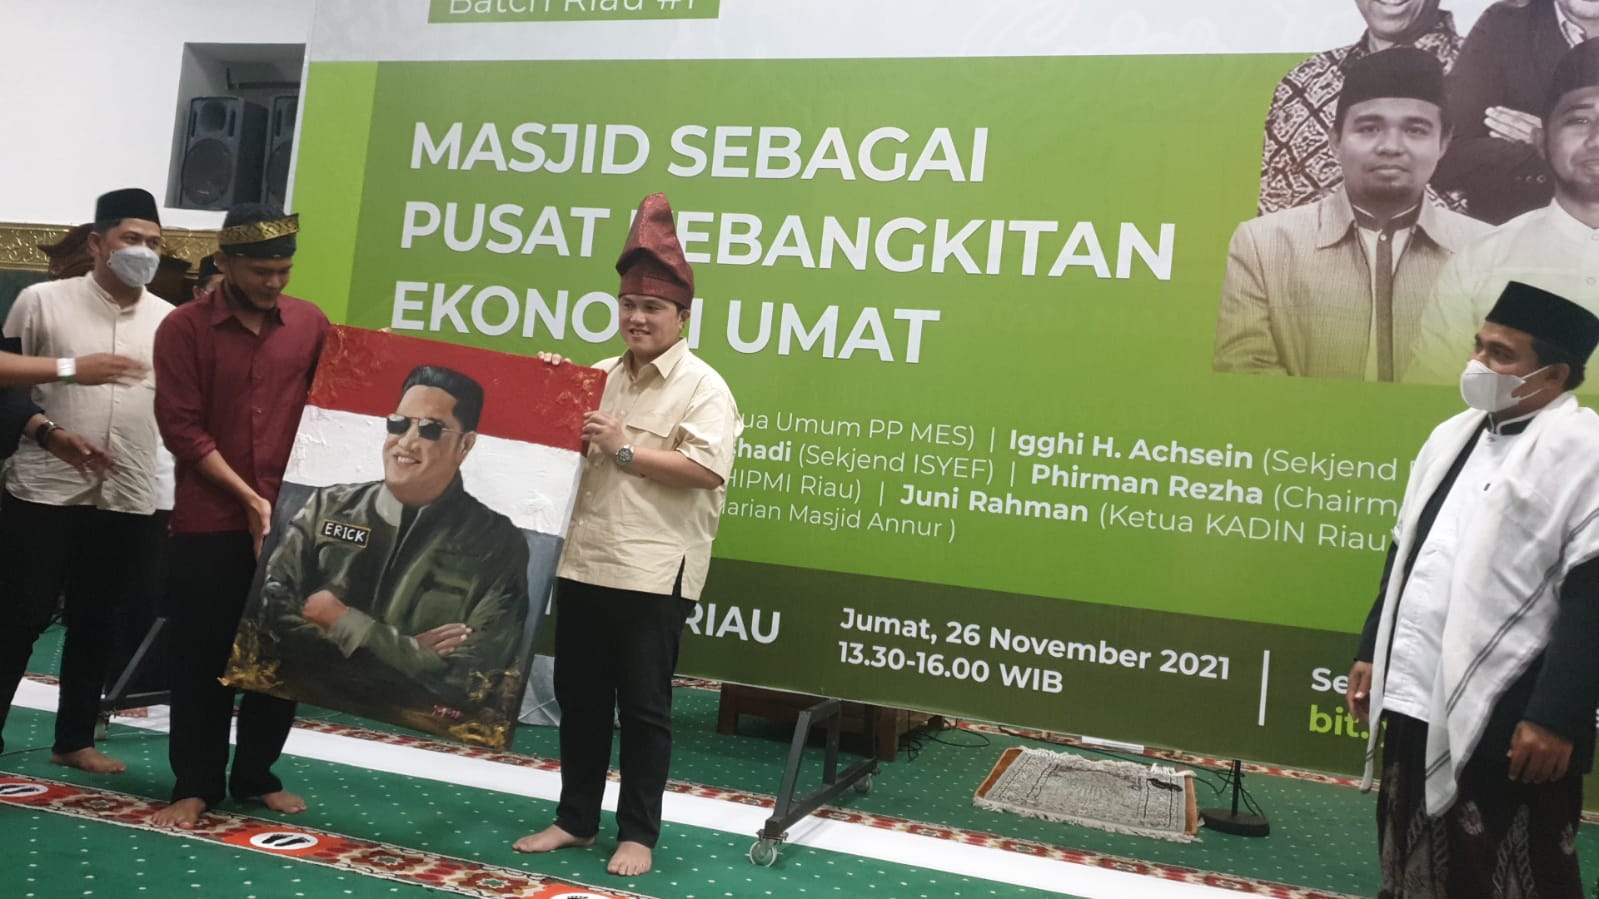 Erick Thohir di Riau : Jadikan Masjid Sebagai Mercusuar Peradaban